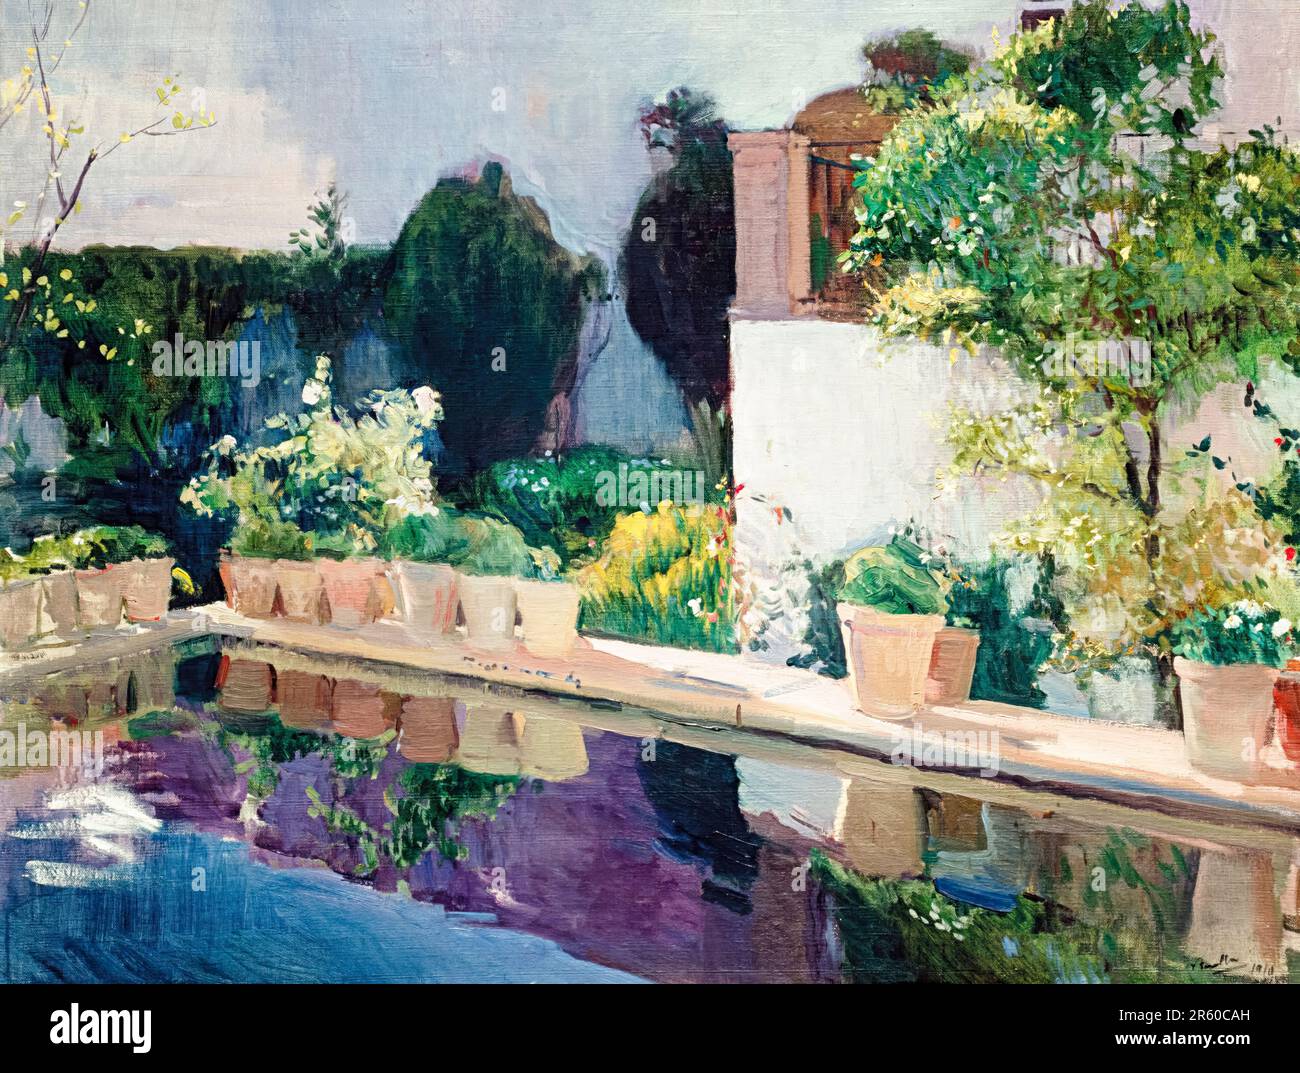 Joaquín Sorolla, Palais de l'Étang, Jardins royaux de Séville, peinture de paysage à l'huile sur toile, 1910 Banque D'Images